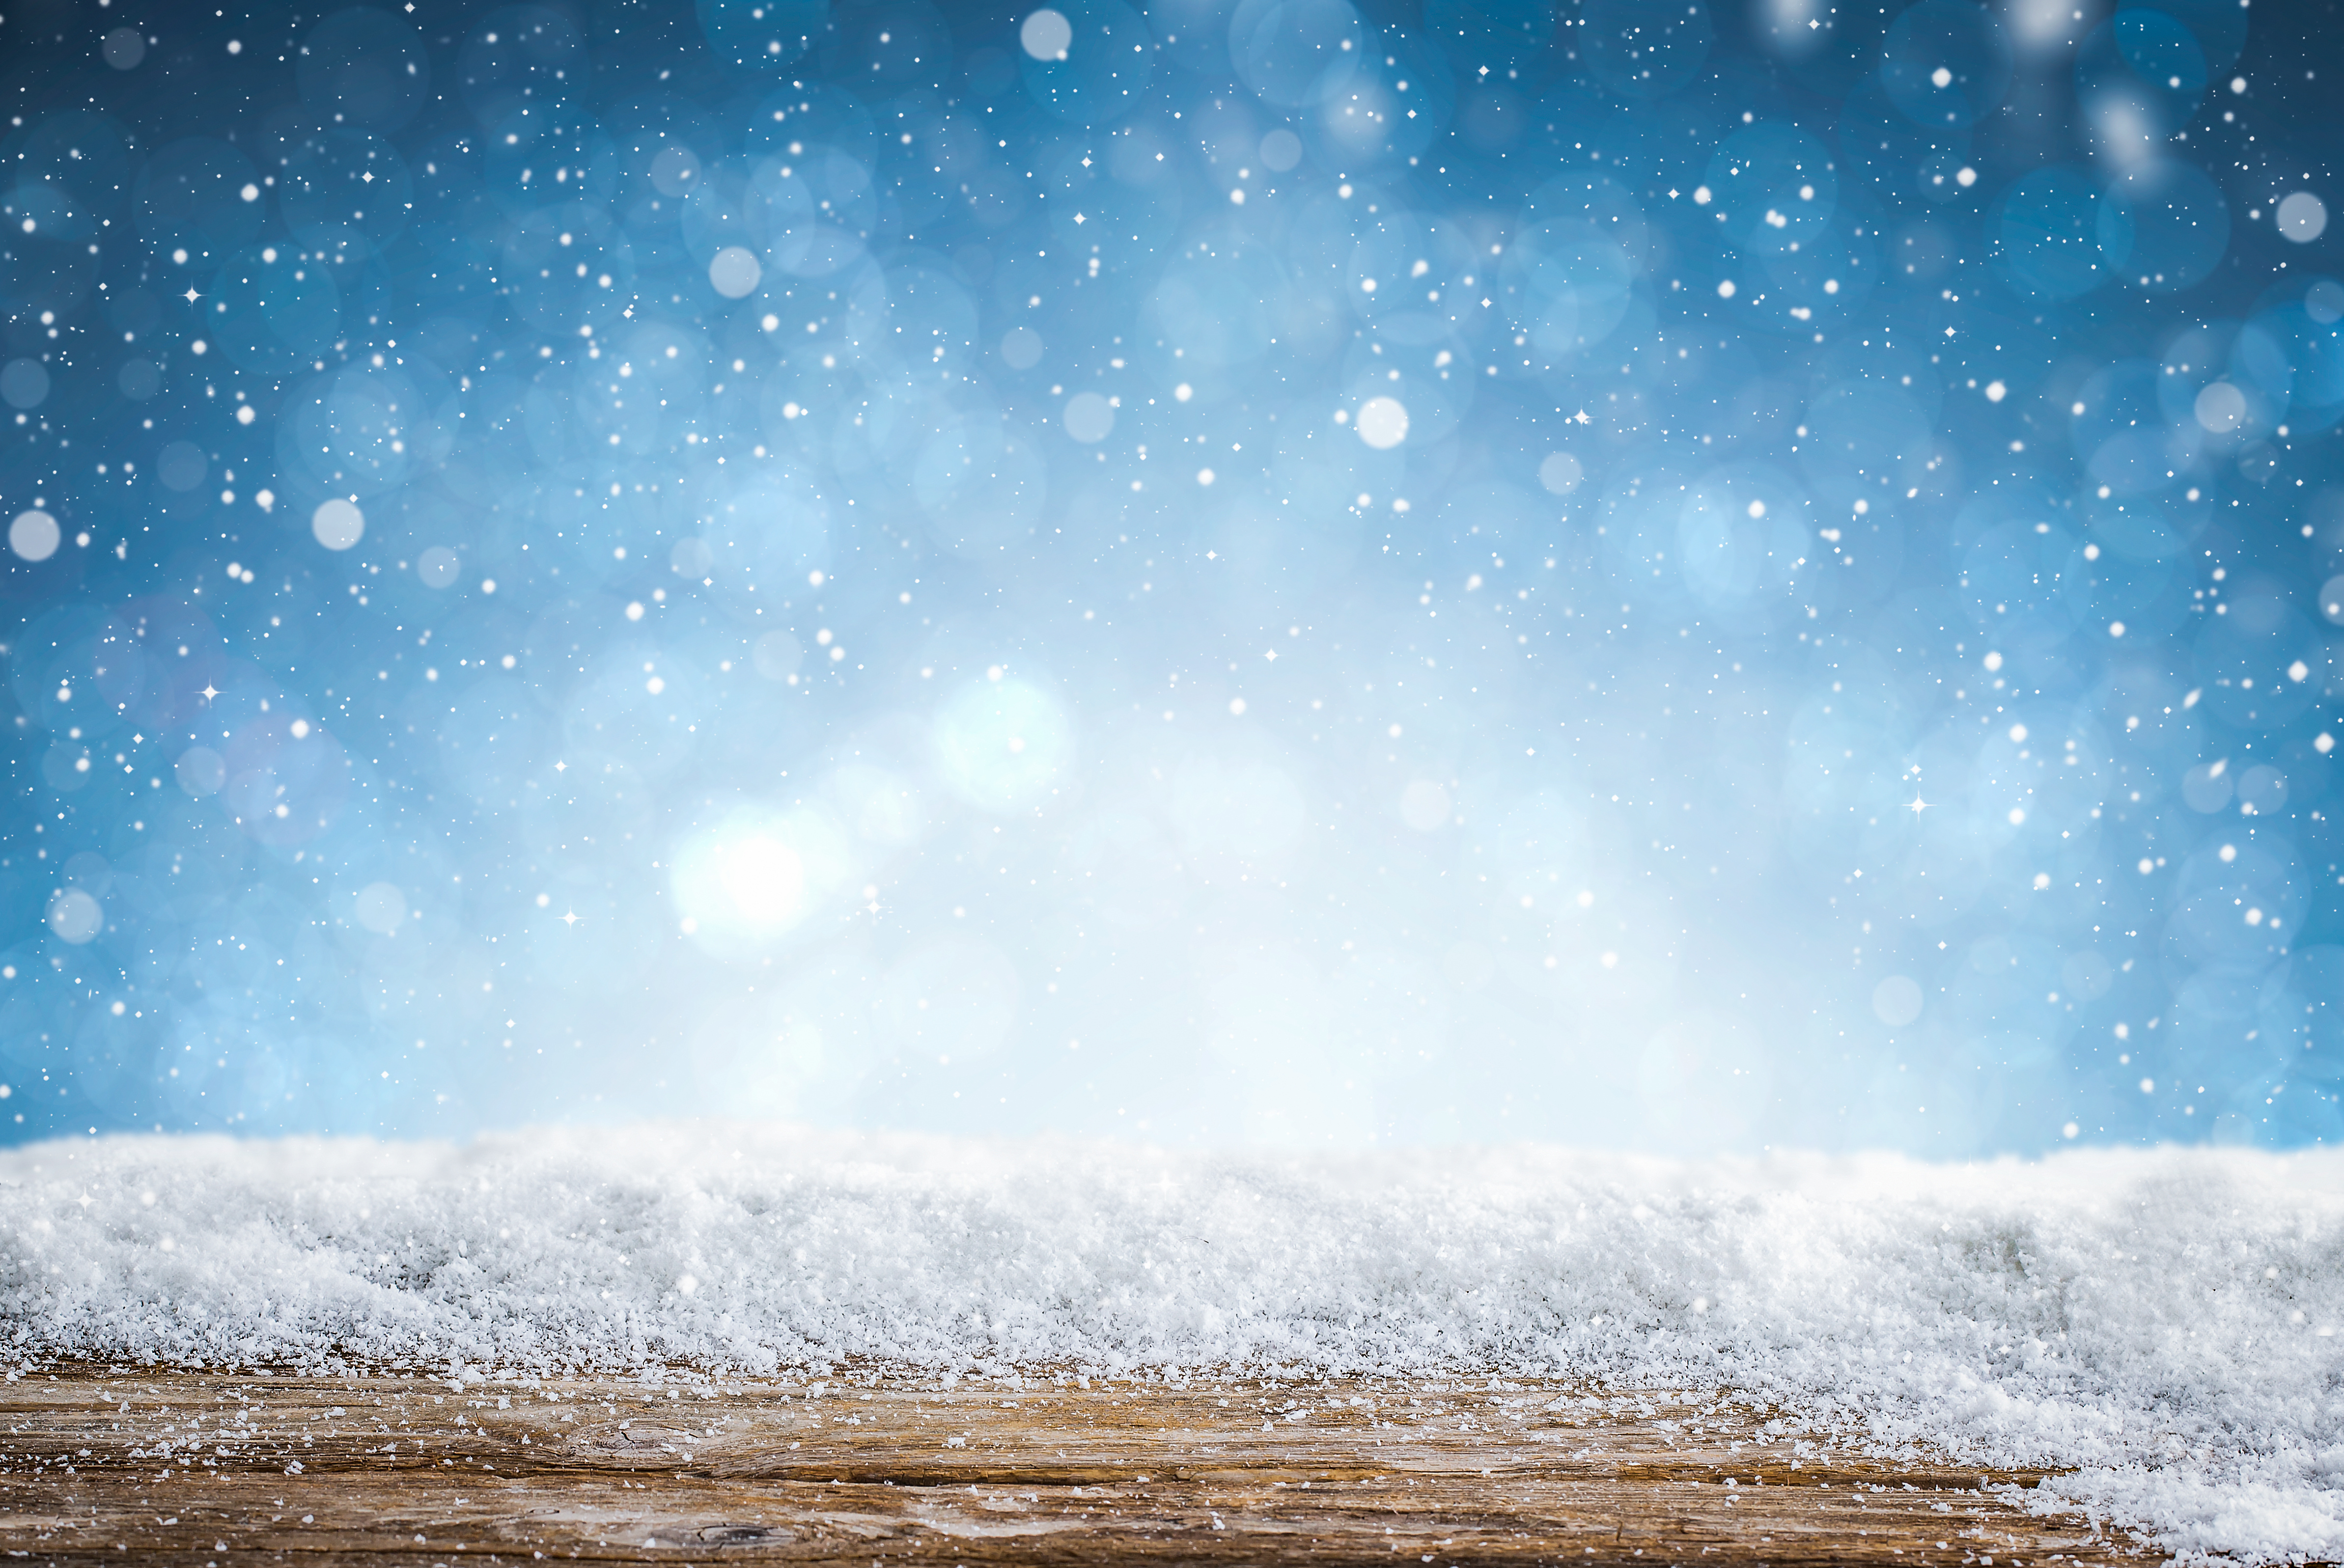 Snowflake: Cùng chiêm ngưỡng những tinh túy phảng phất và đầy sáng tạo trong những bông tuyết này. Chúng sẽ đưa bạn đến với một thế giới bạt ngàn tuyết trắng mịn đẹp và sẽ khiến trái tim bạn thêm phần ấm áp.